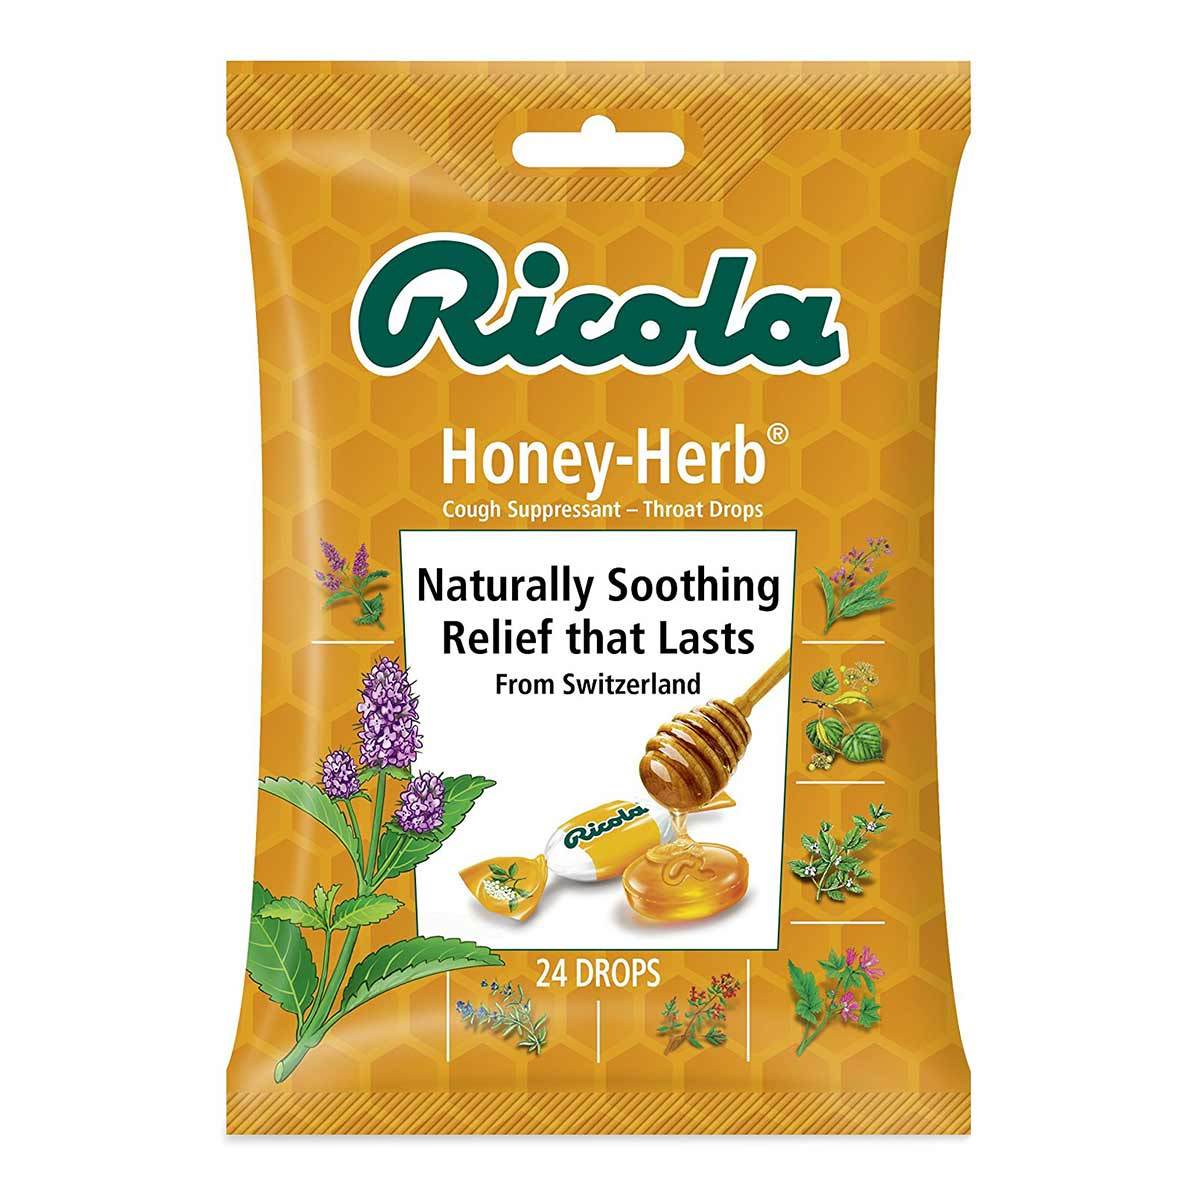 Ricola Cough Suppressant Throat Drops, Honey-Herb - 24 count